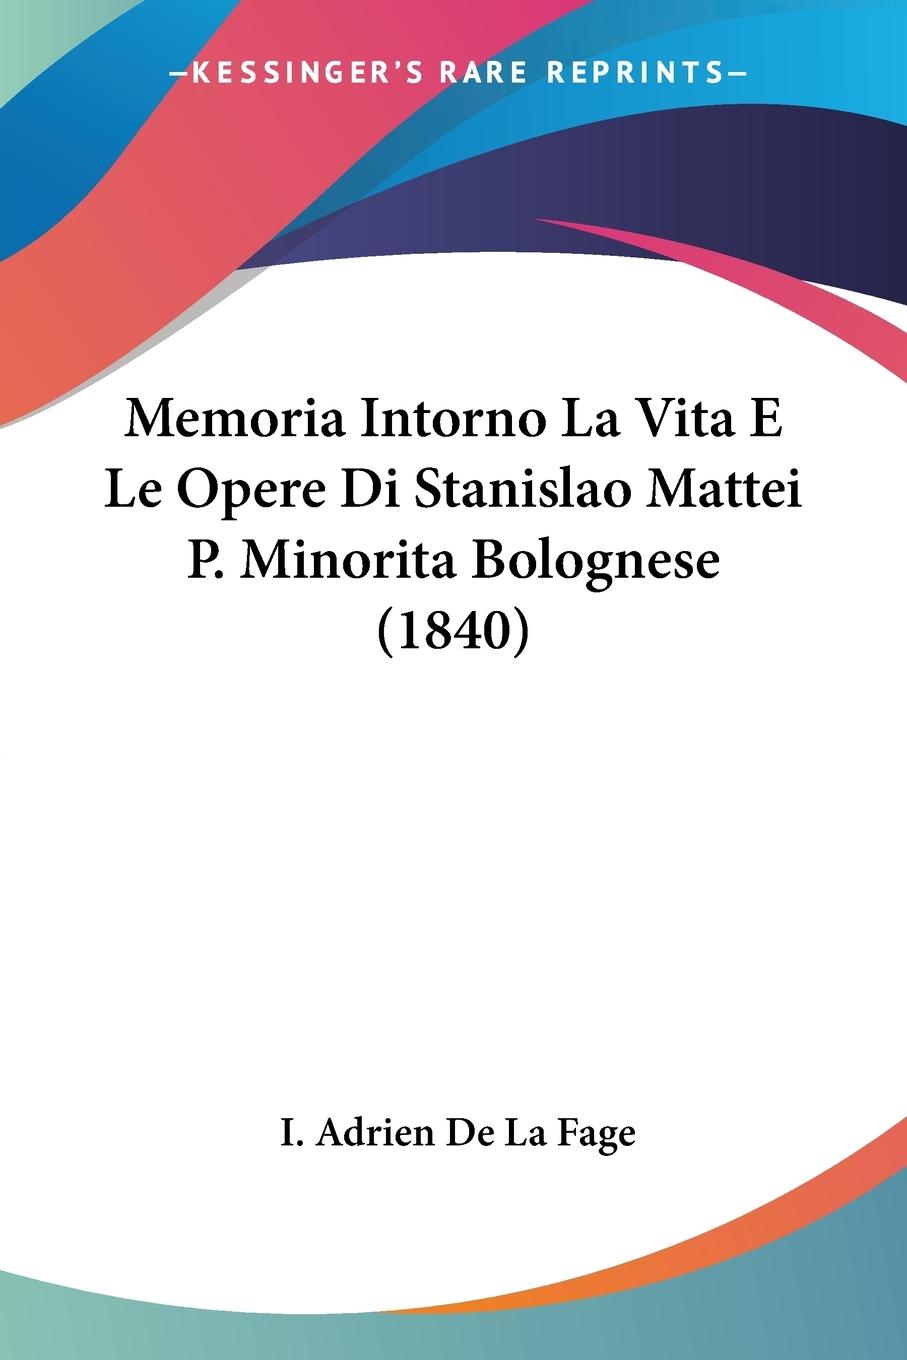 Memoria Intorno La Vita E Le Opere Di Stanislao Mattei P. Minorita Bolognese (1840) - De La Fage, I. Adrien